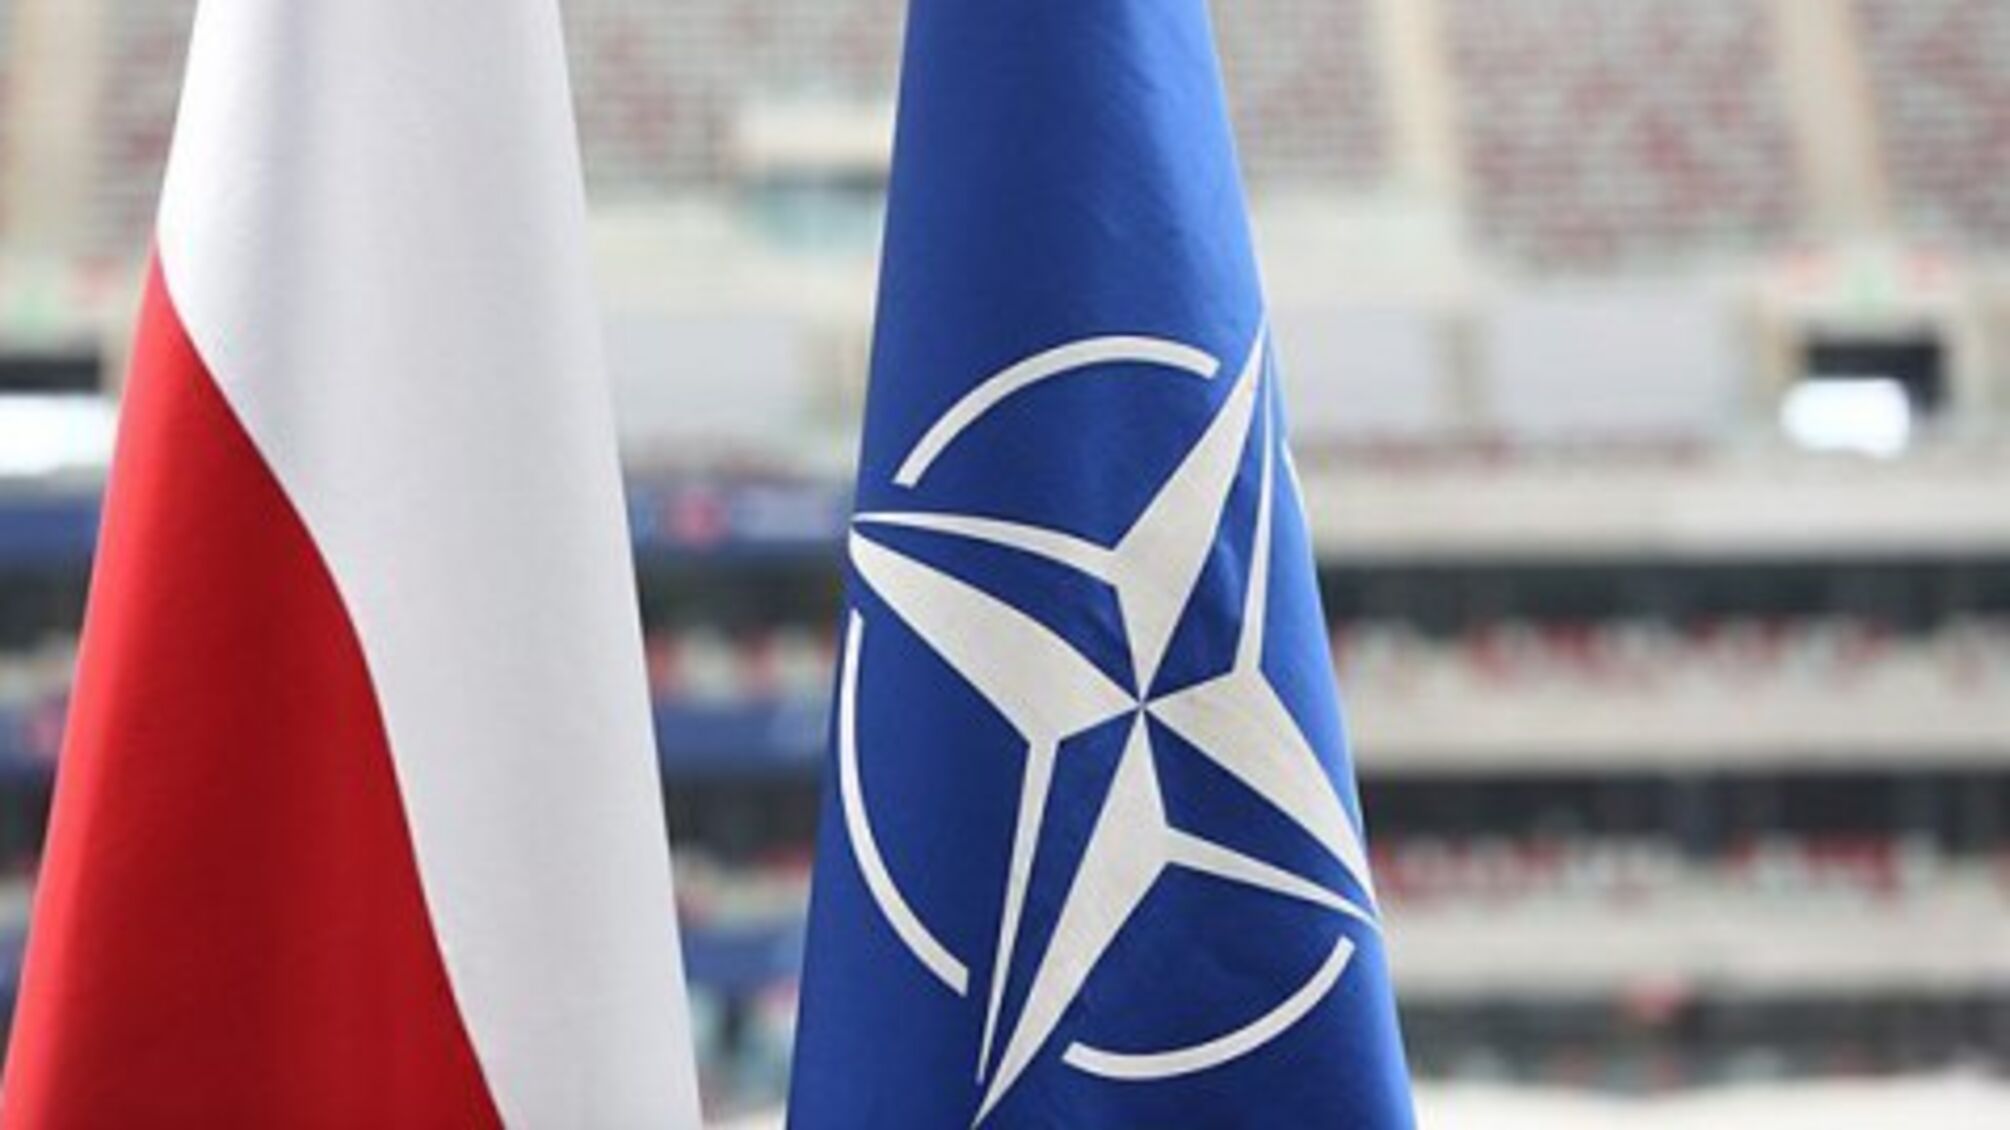 Польский посол обратится к НАТО насчет активации 4 статьи: что это значит